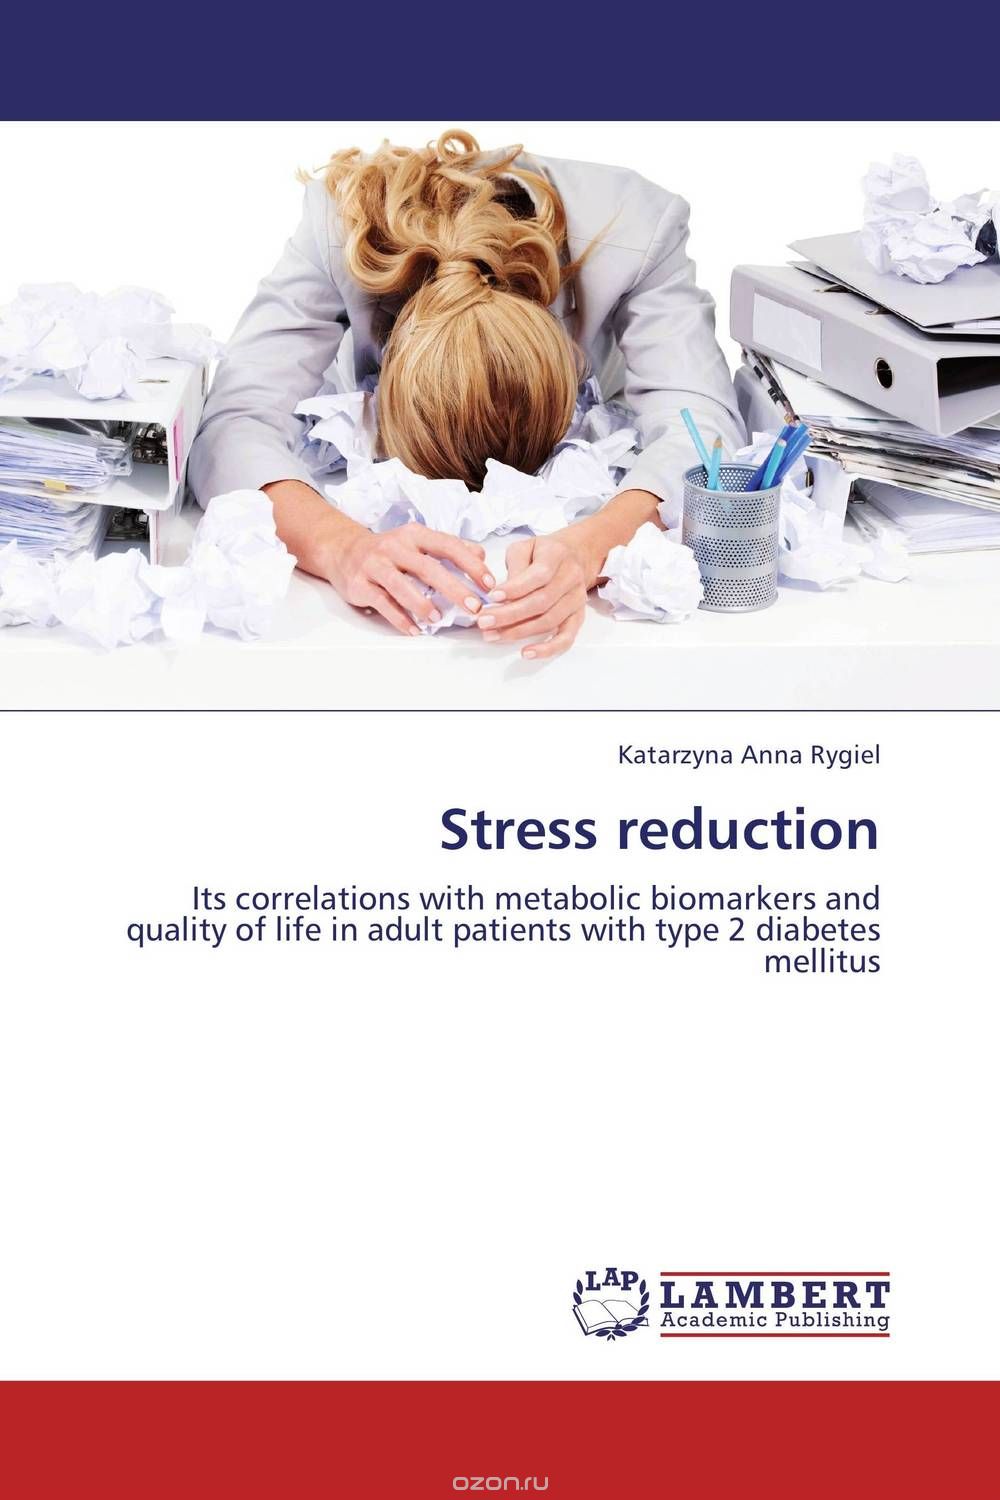 Скачать книгу "Stress reduction"